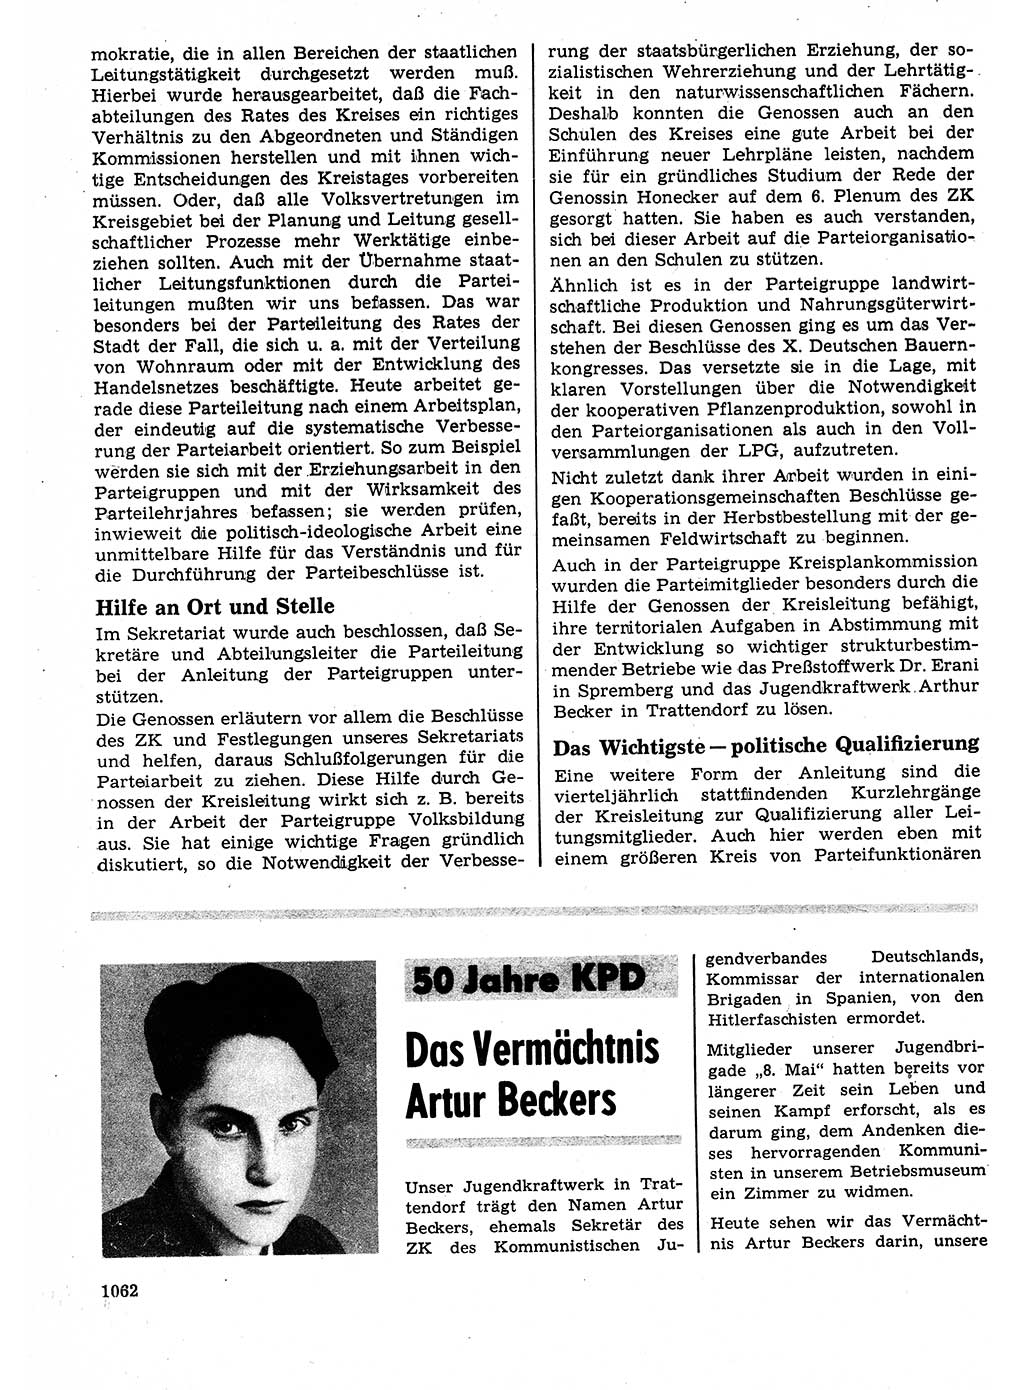 Neuer Weg (NW), Organ des Zentralkomitees (ZK) der SED (Sozialistische Einheitspartei Deutschlands) für Fragen des Parteilebens, 23. Jahrgang [Deutsche Demokratische Republik (DDR)] 1968, Seite 1046 (NW ZK SED DDR 1968, S. 1046)